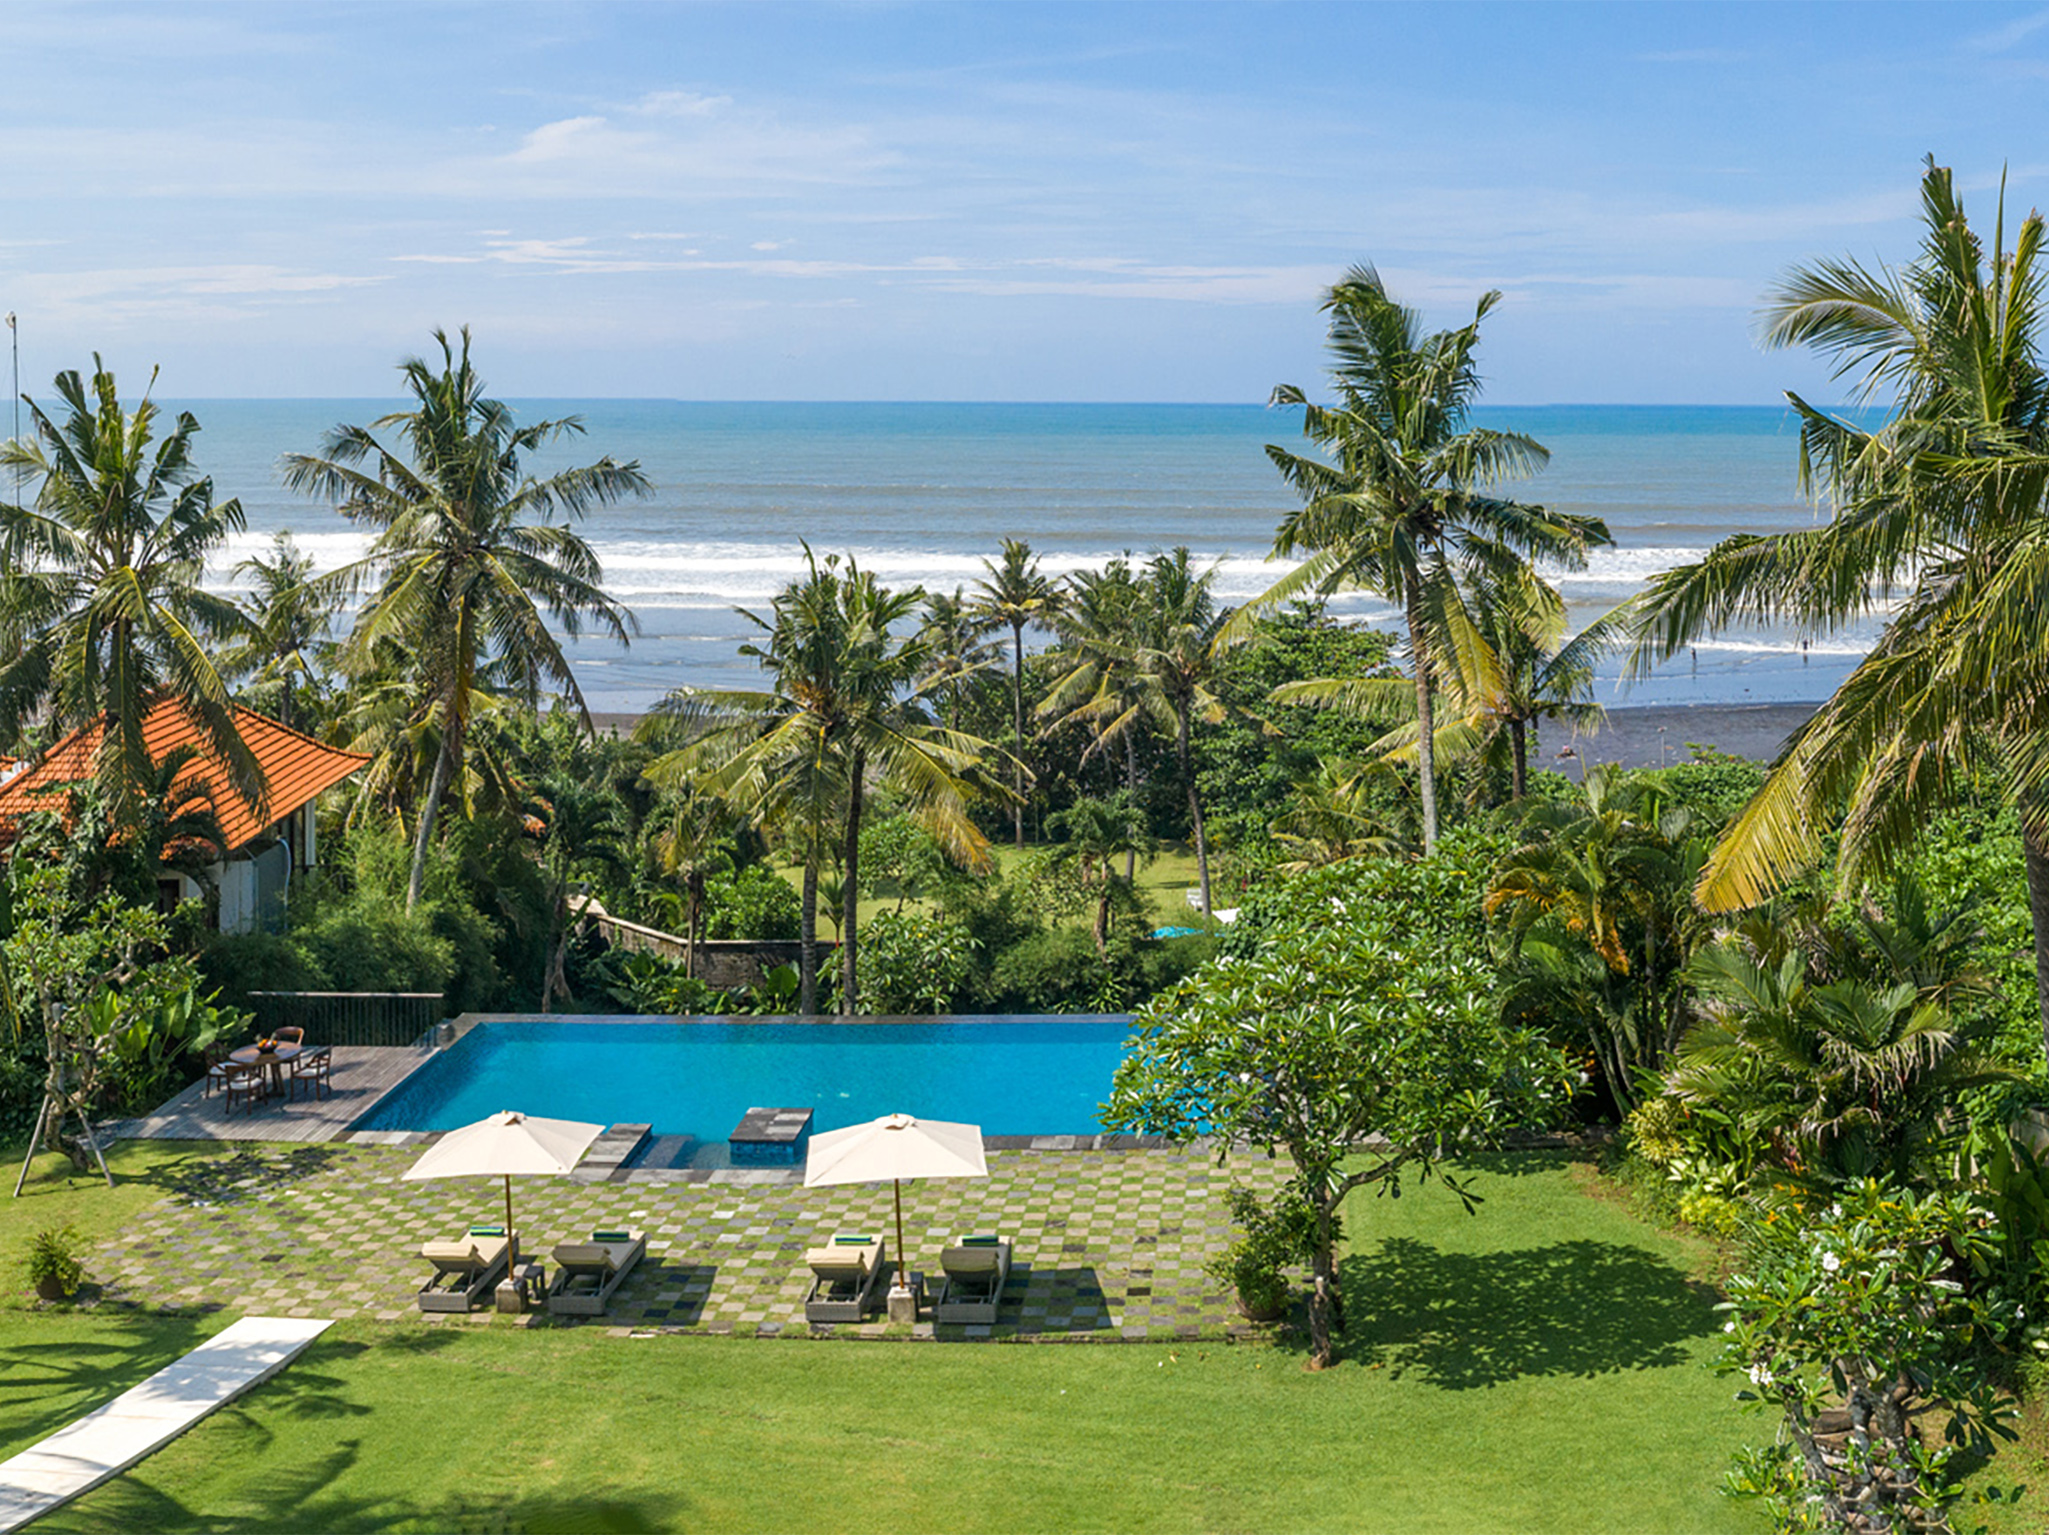 Villa Kailasha - Expansive lawn and pool - Villa Kailasha, Tabanan, Bali